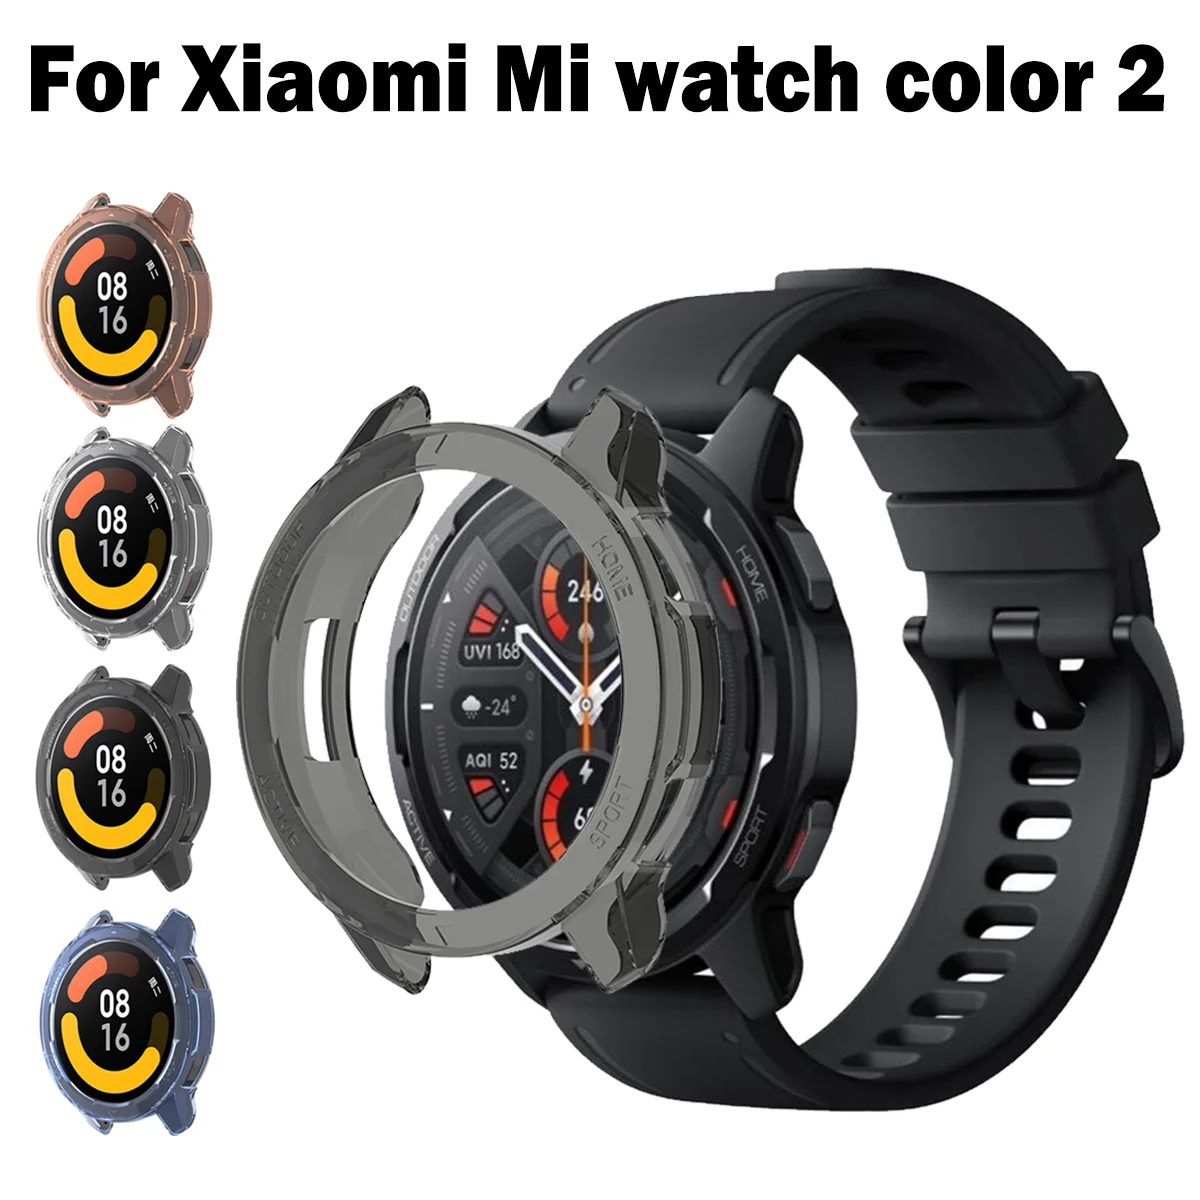 Защитный чехол для Xiaomi Mi watch color 2, защитная рамка для смарт-часов, мягкий кристально чистый чехол из ТПУ для Mi watch S1 active